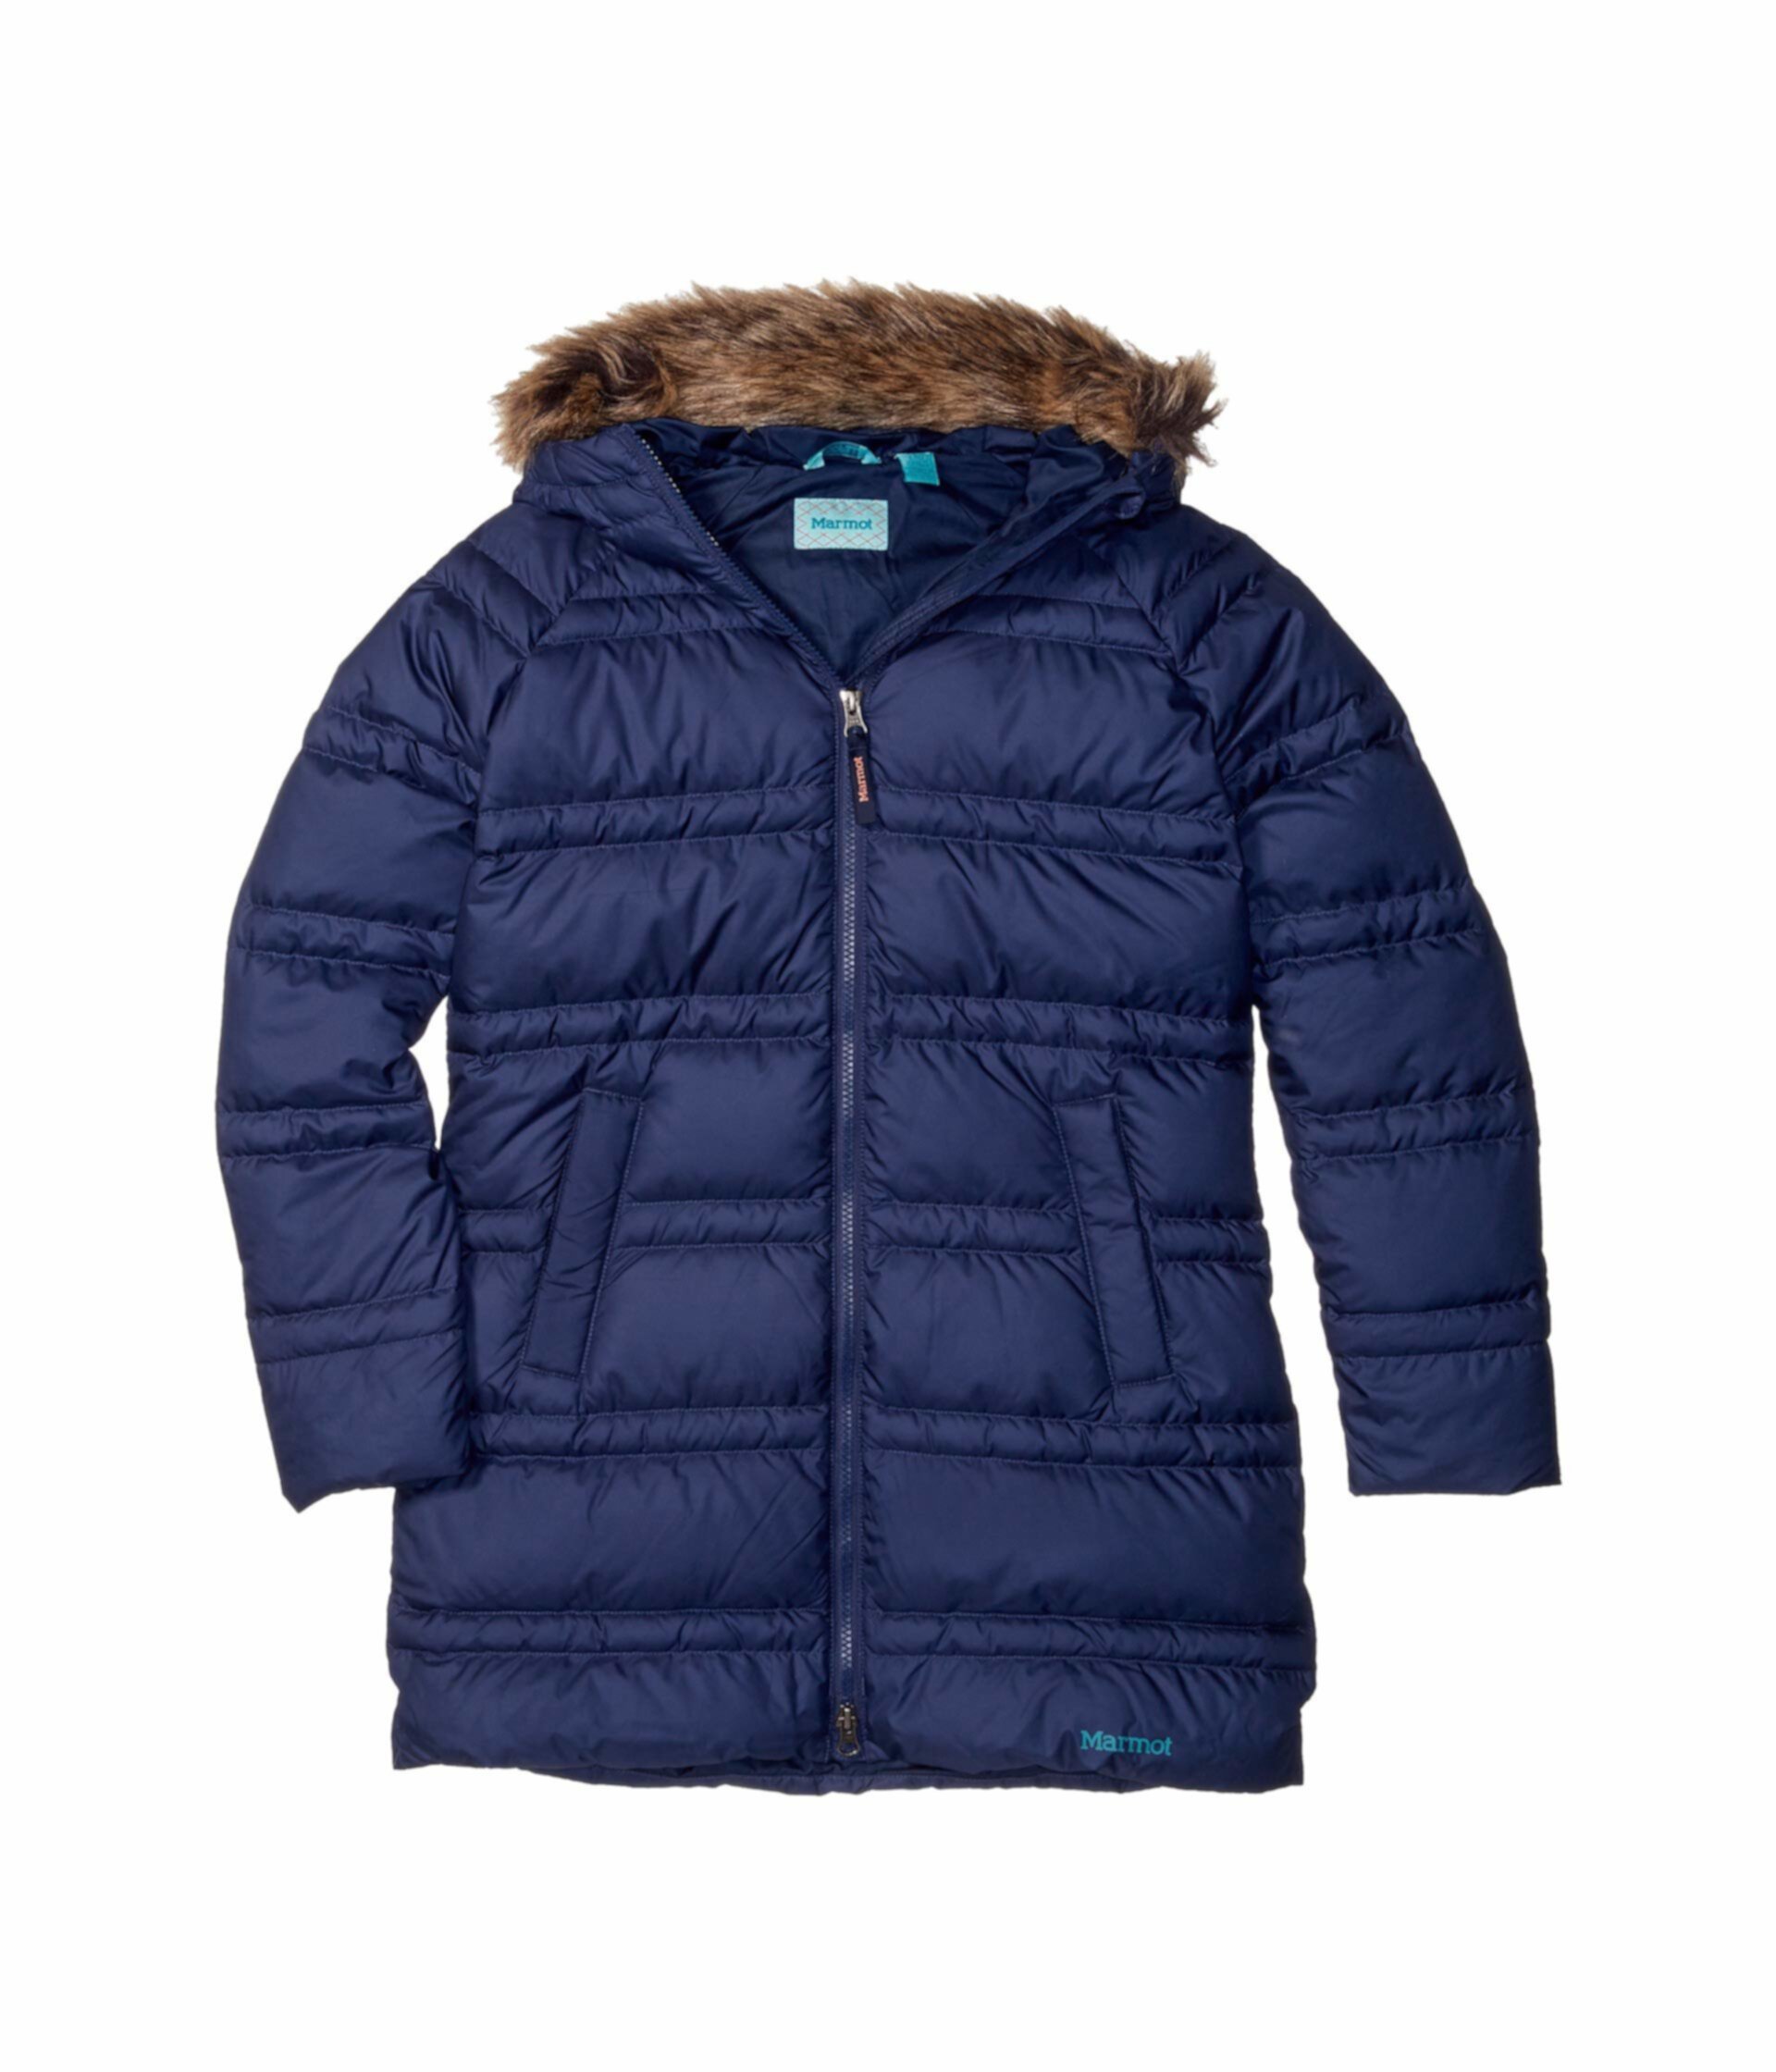 Куртка Ann Arbor (для детей младшего и школьного возраста) Marmot Kids